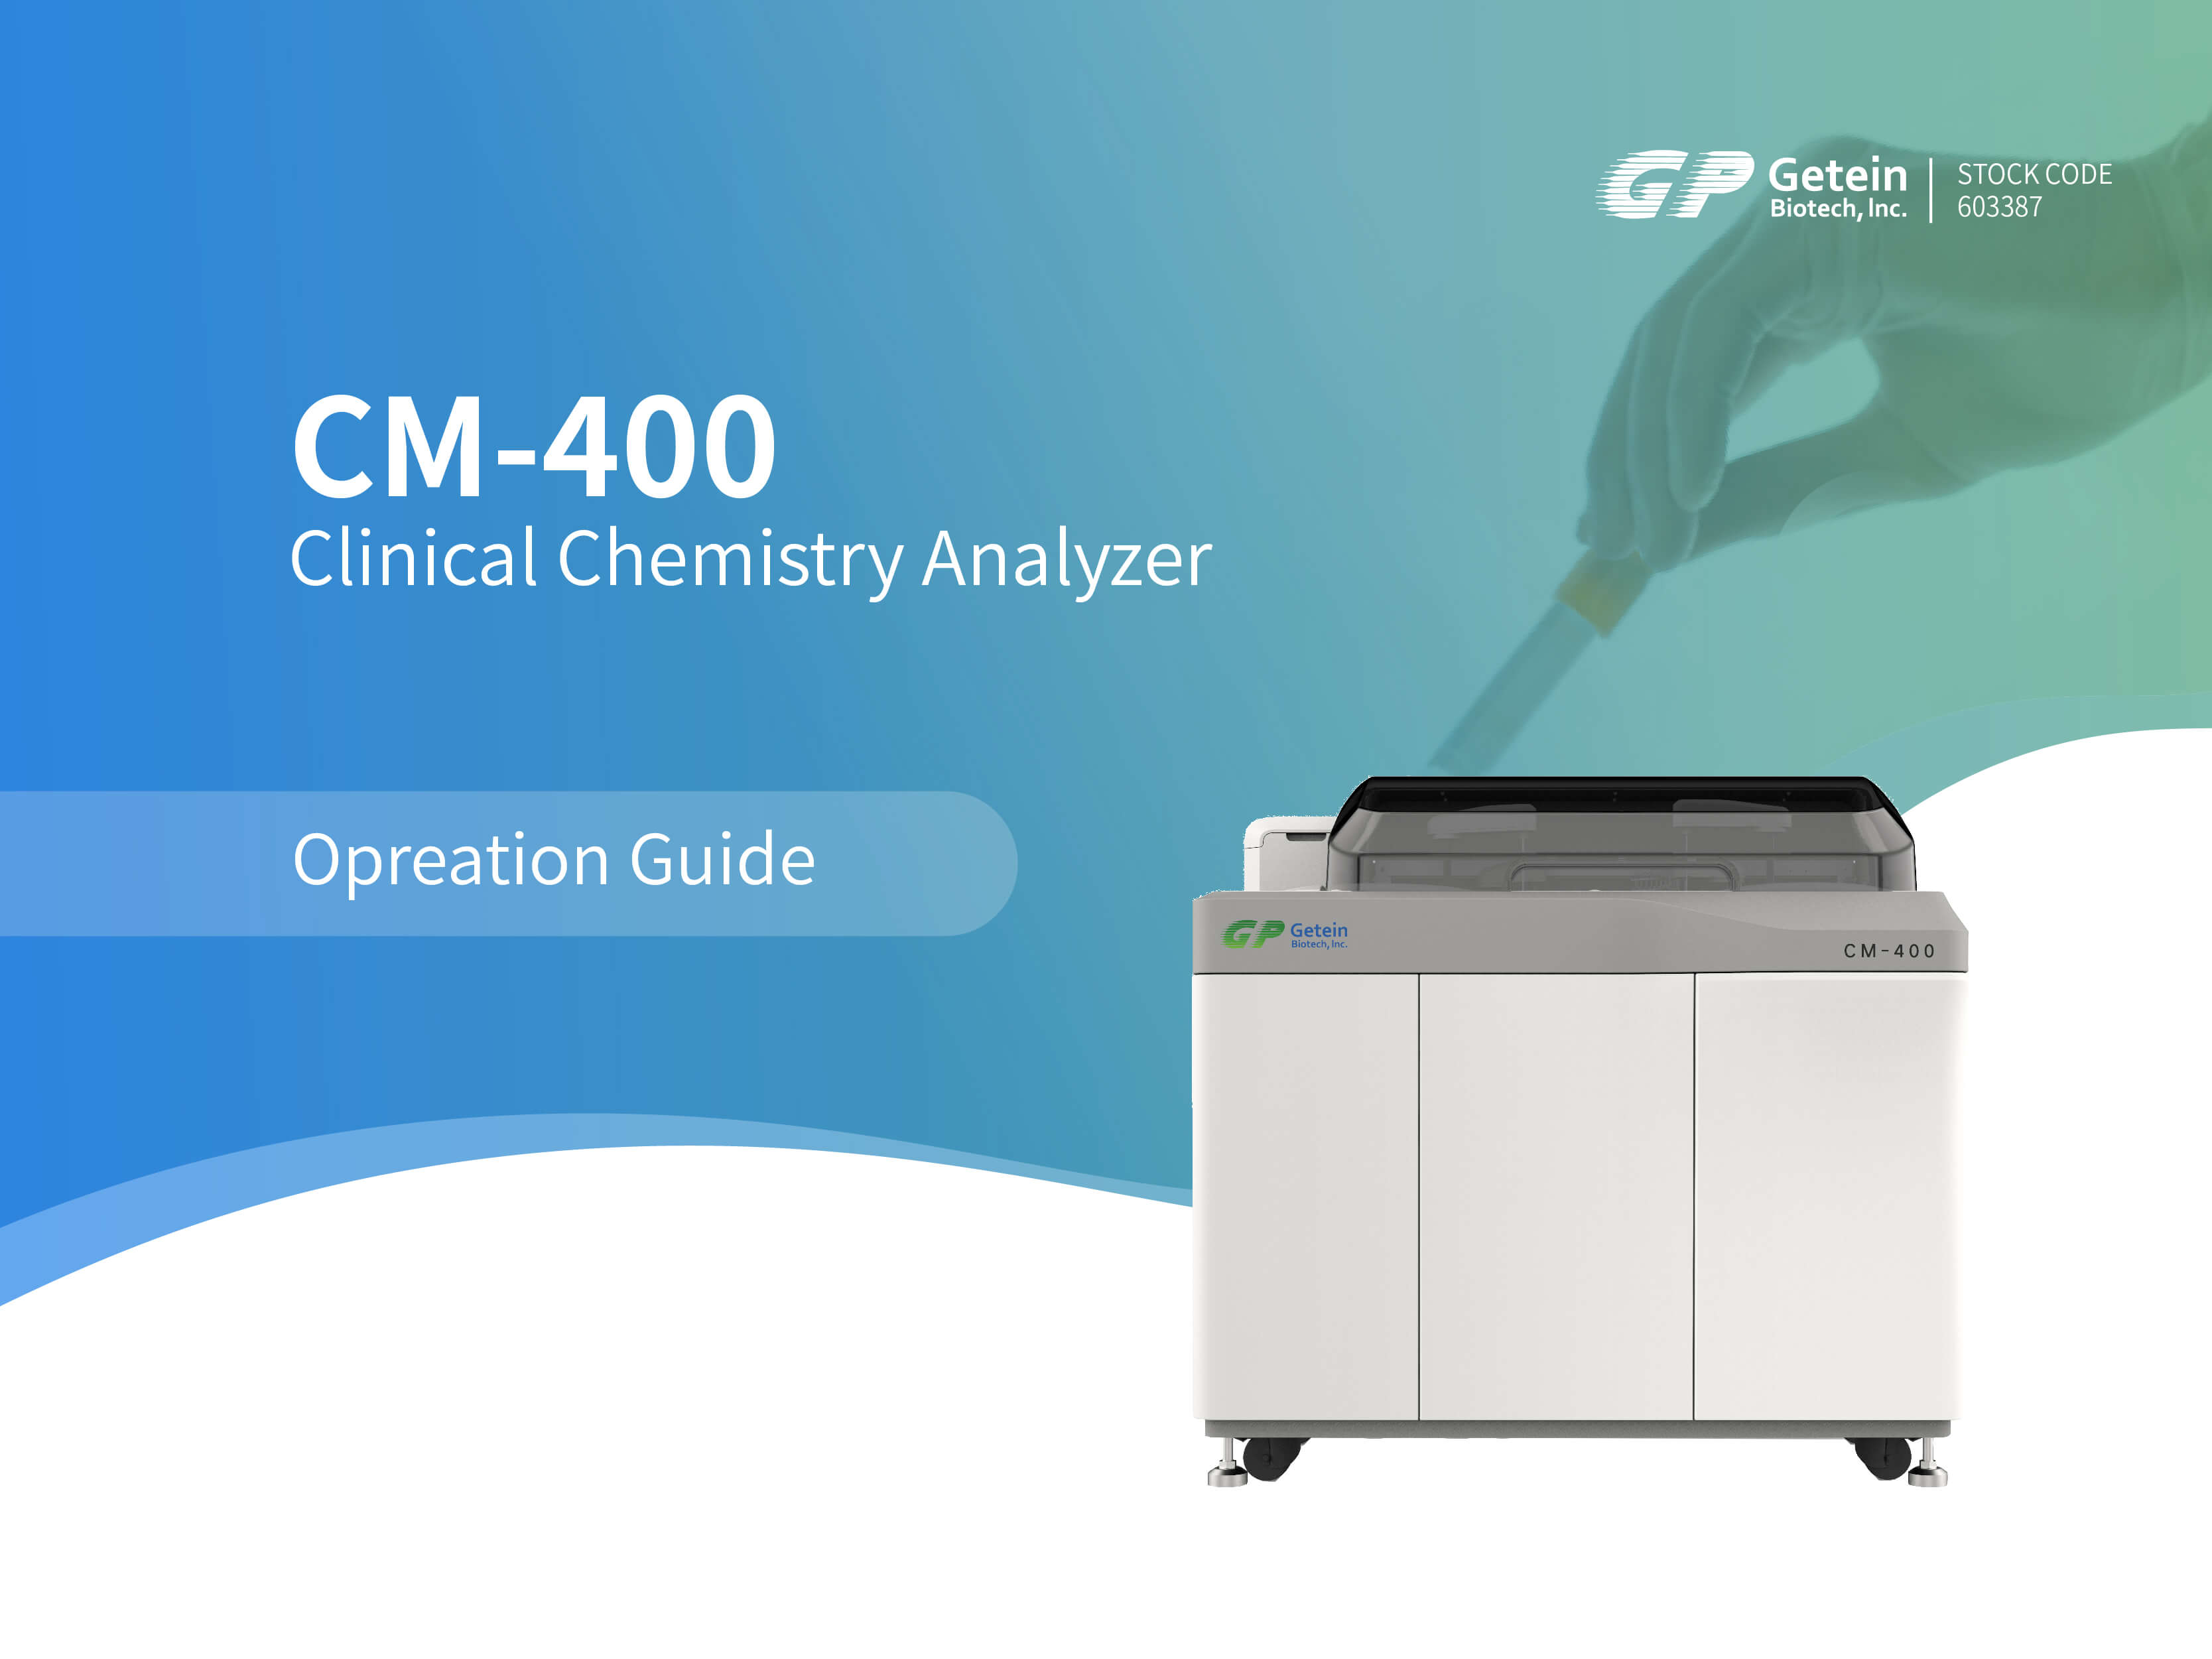 Guía de funcionamiento del analizador químico clínico Getein CM-400